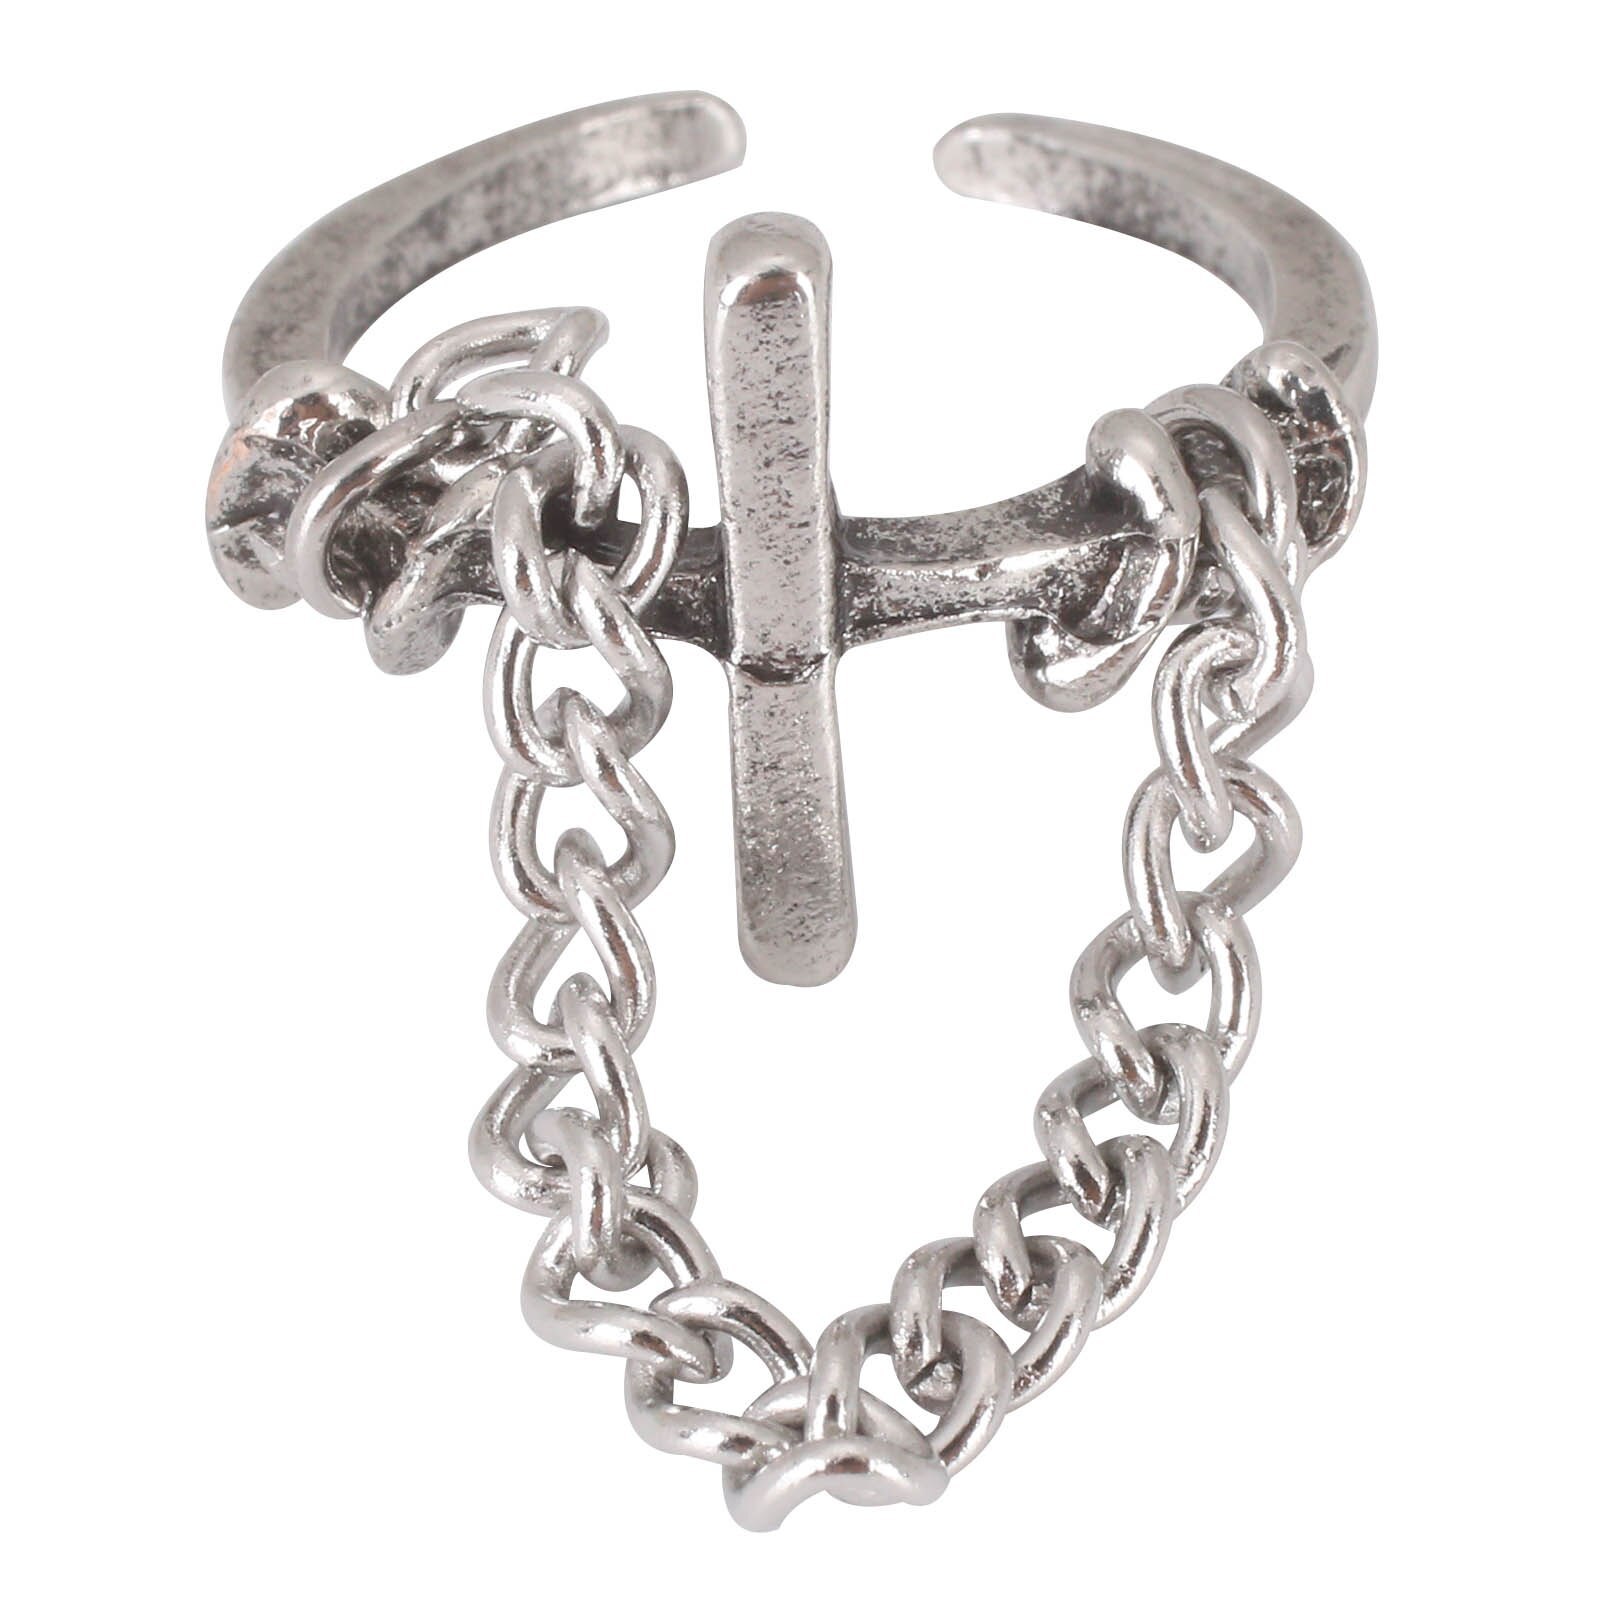 1 pcs Vintage Fashion Alloy Cross Belt Chain-shaped Rings Unique Designs for Men